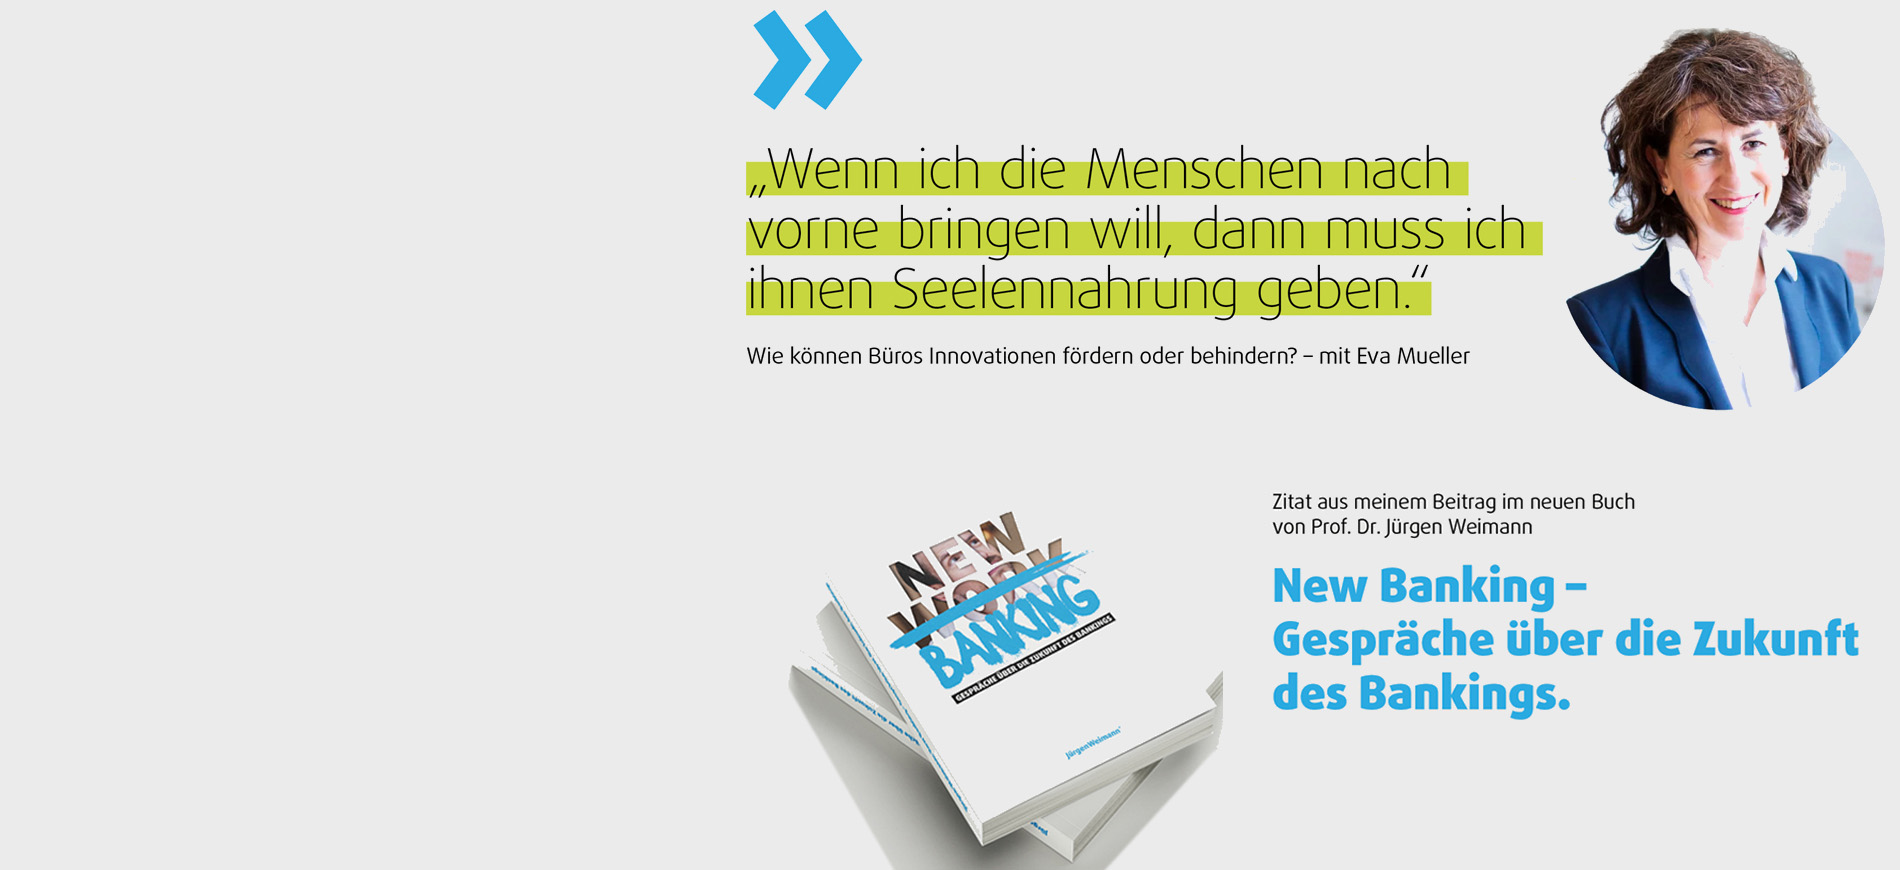 New Banking von Jürgen Weimann, Beitrag Eva Mueller Kunstberatung